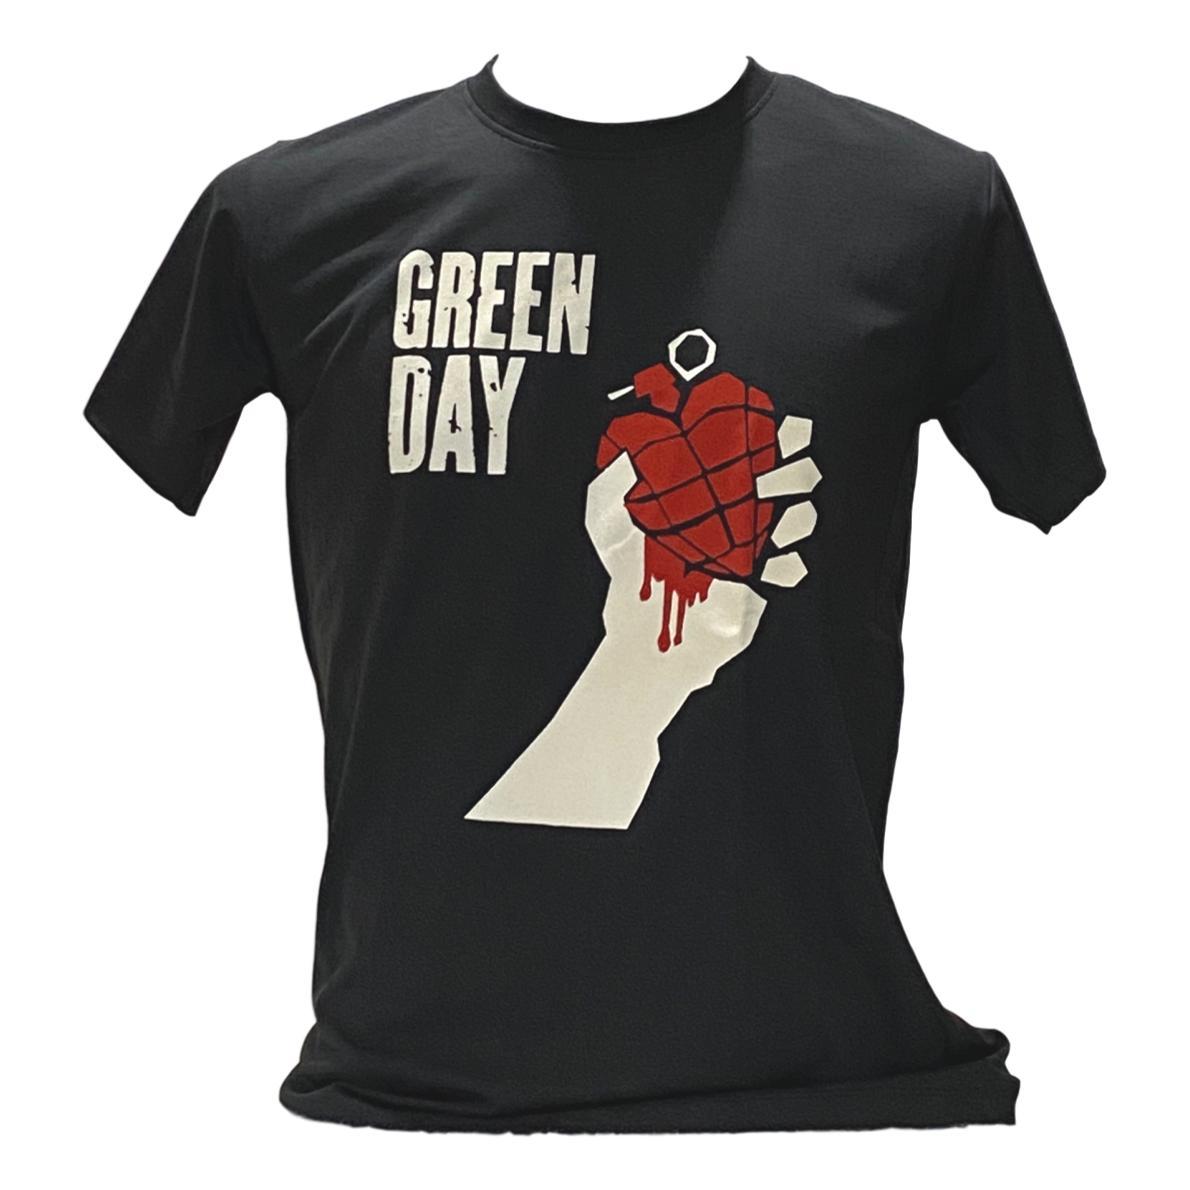 楽天alice alice 楽天市場店【送料無料】 グリーンデイ Green Day プリントTシャツ ムービーTシャツ バンドTシャツ メンズ レディース ユニセックス パンク ロック